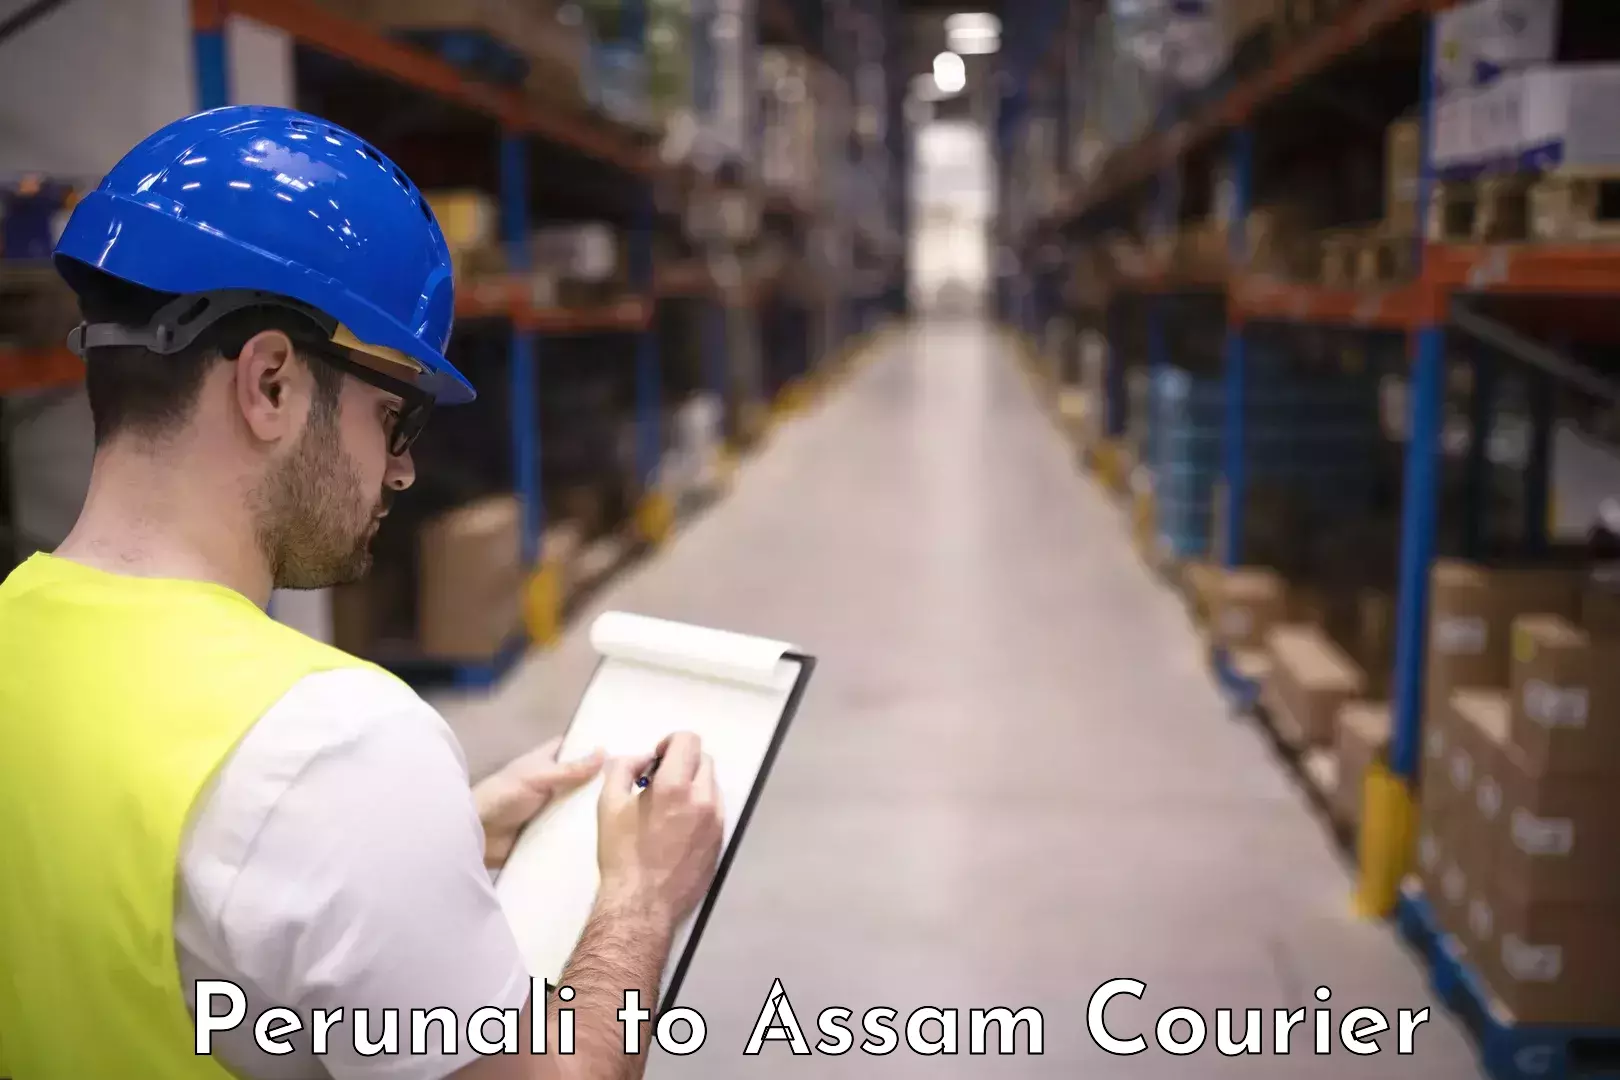 Furniture delivery service Perunali to Assam